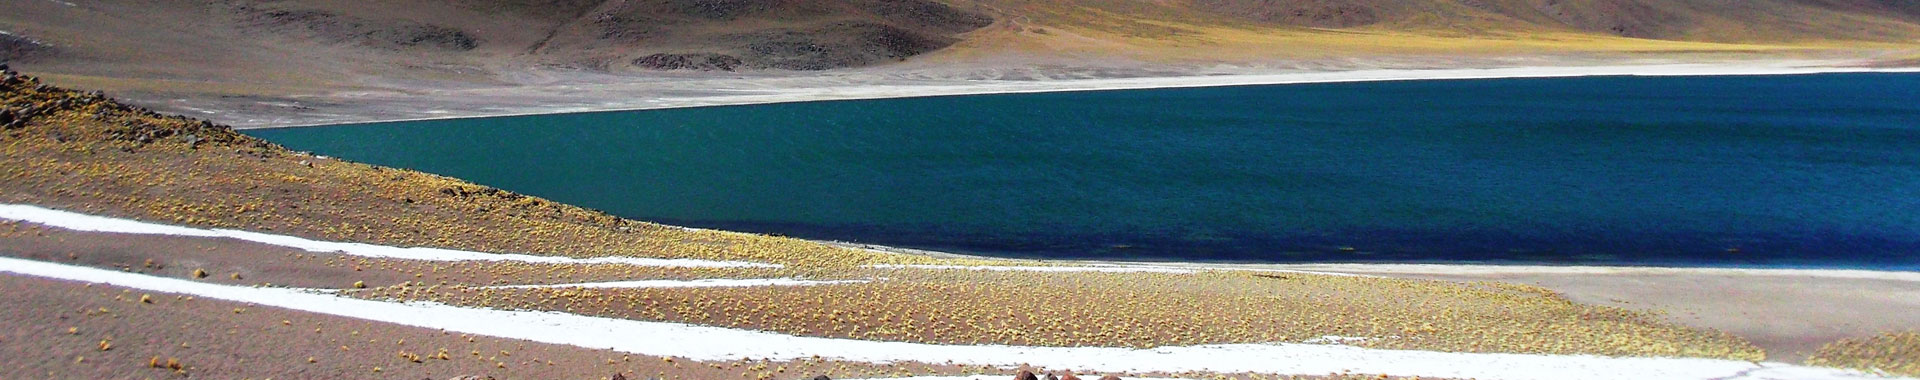 Chile - Atacama - Paseos - Lagunas